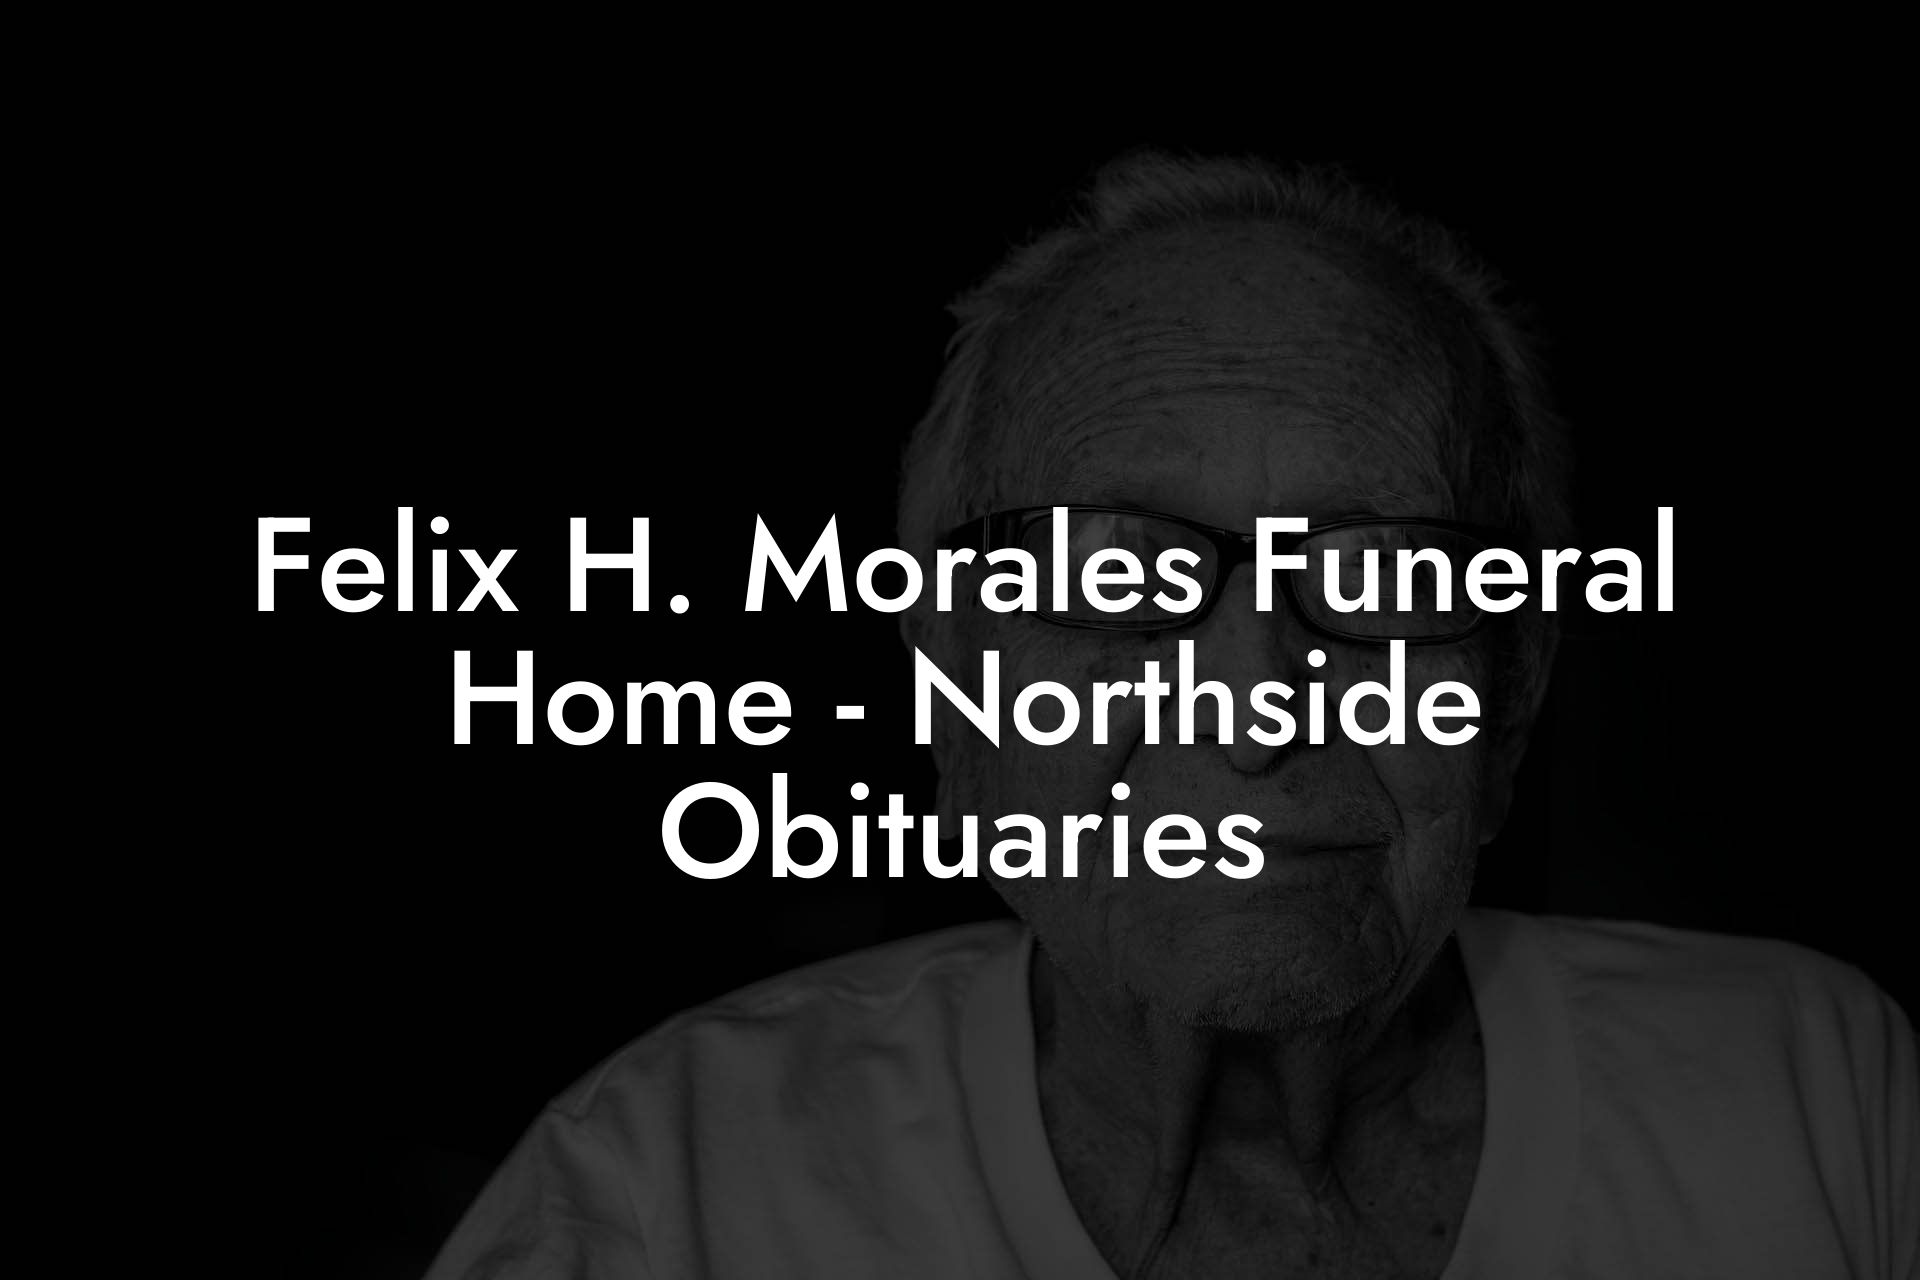 Felix H. Morales Funeral Home - Northside Obituaries